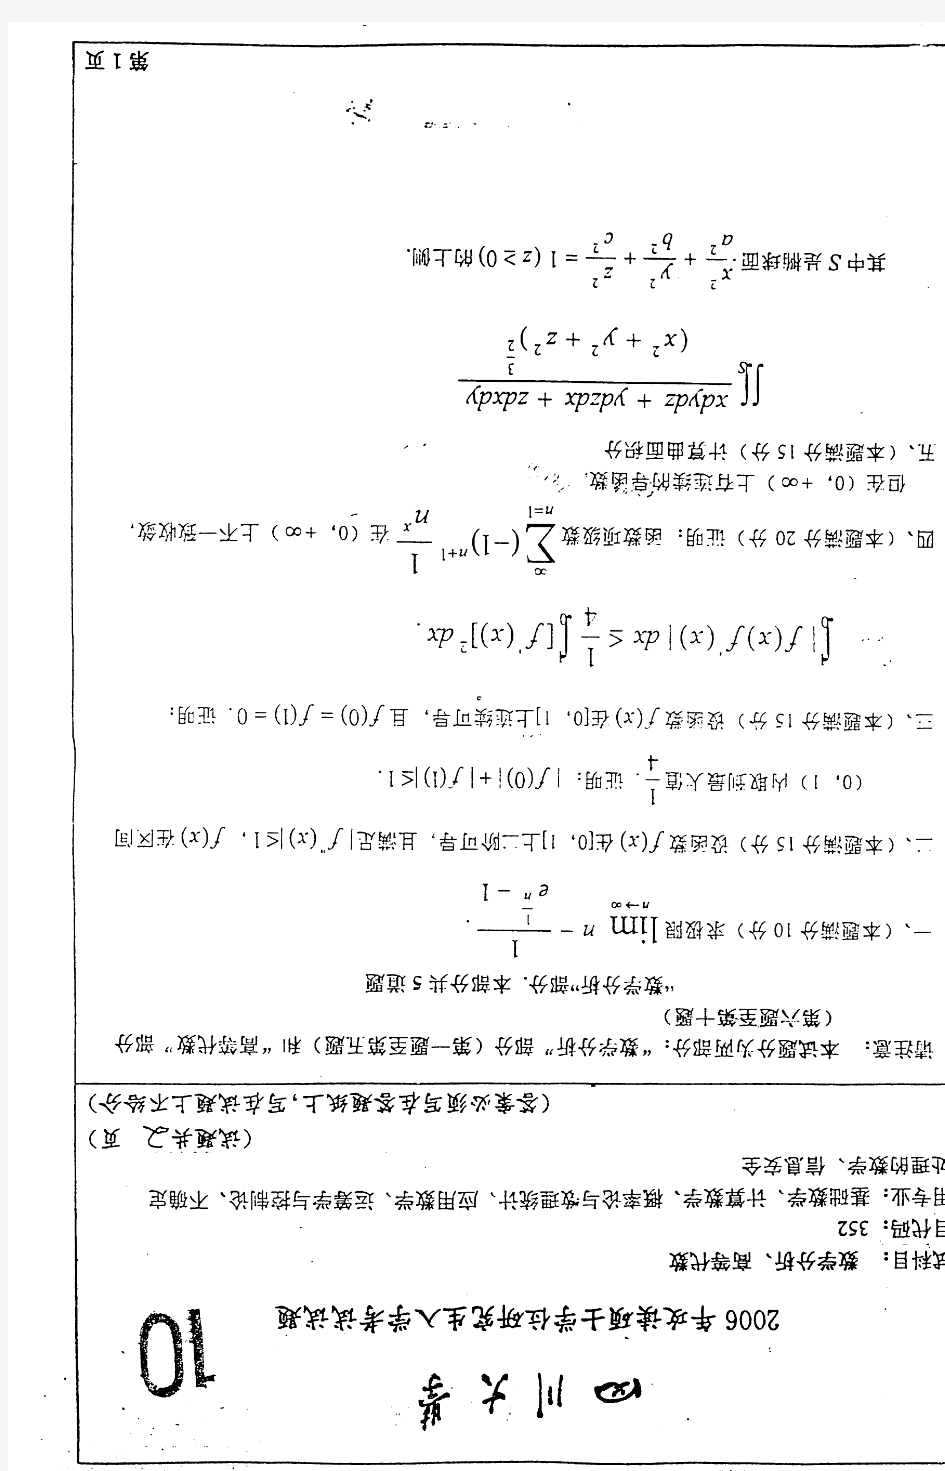 2006年四川大学数学分析、高等代数考研真题-考研真题资料